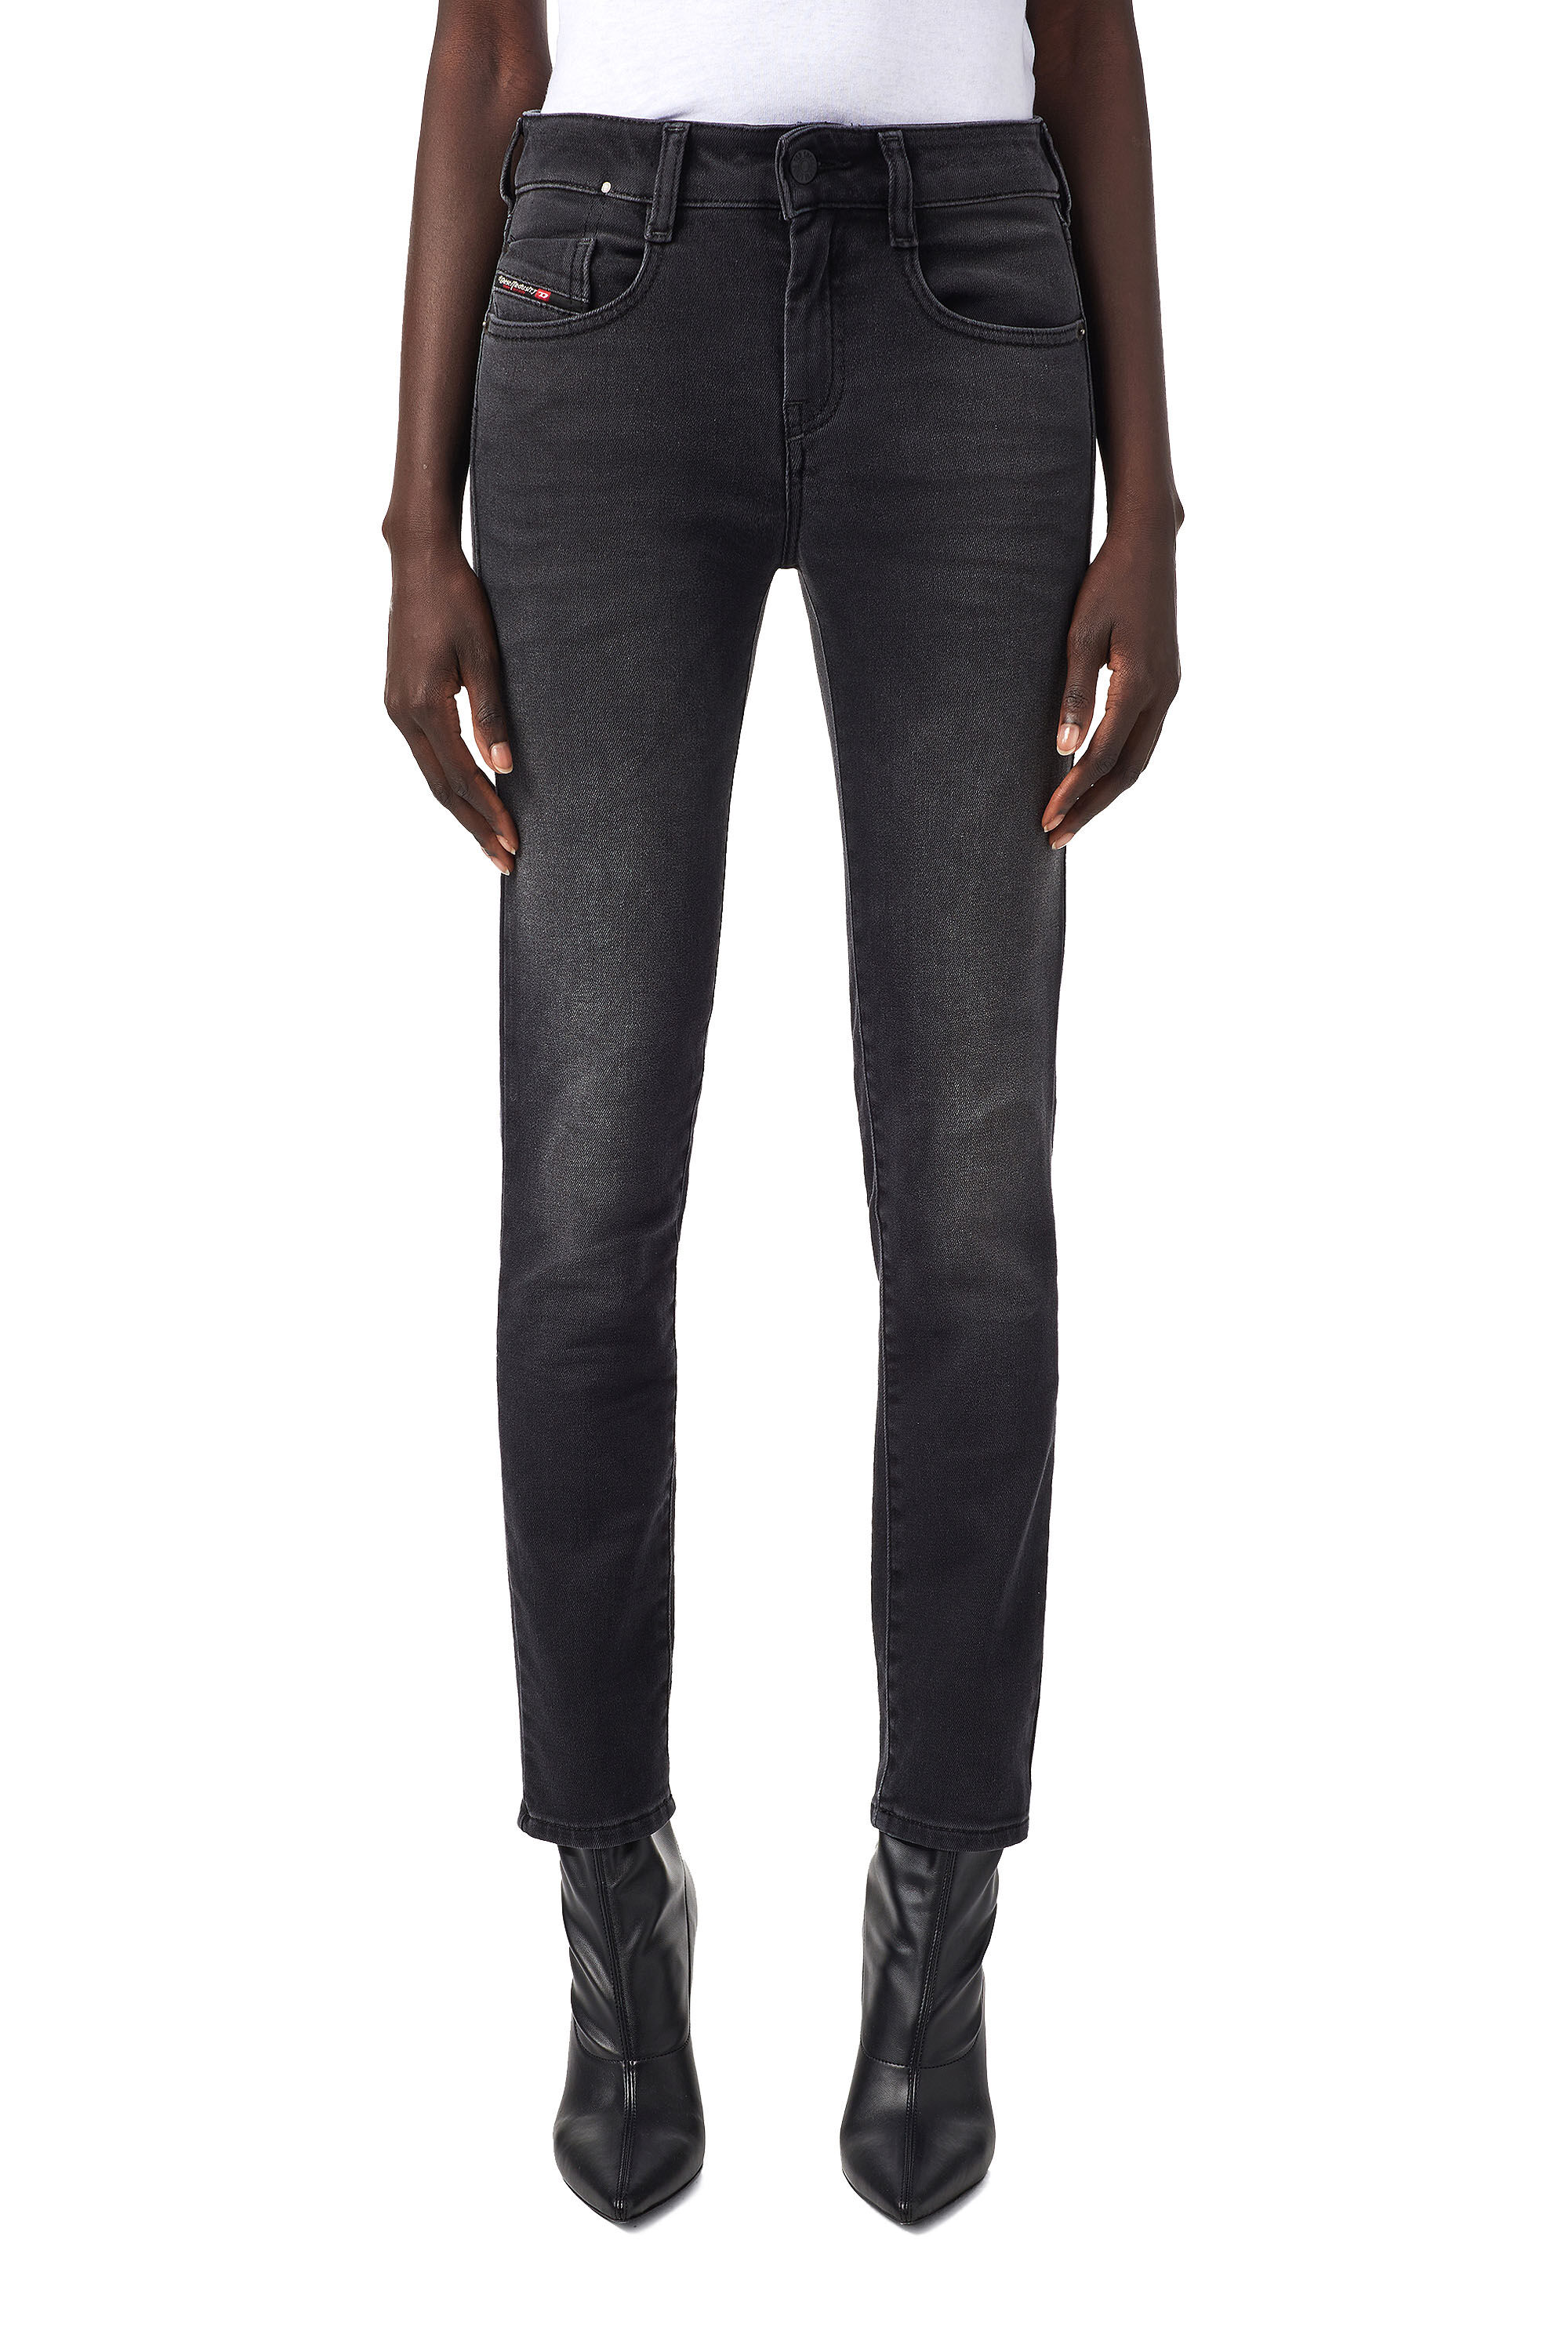 Diesel - D-Ollies JoggJeans® 09B22 Slim, Black/Dark Grey - Image 3